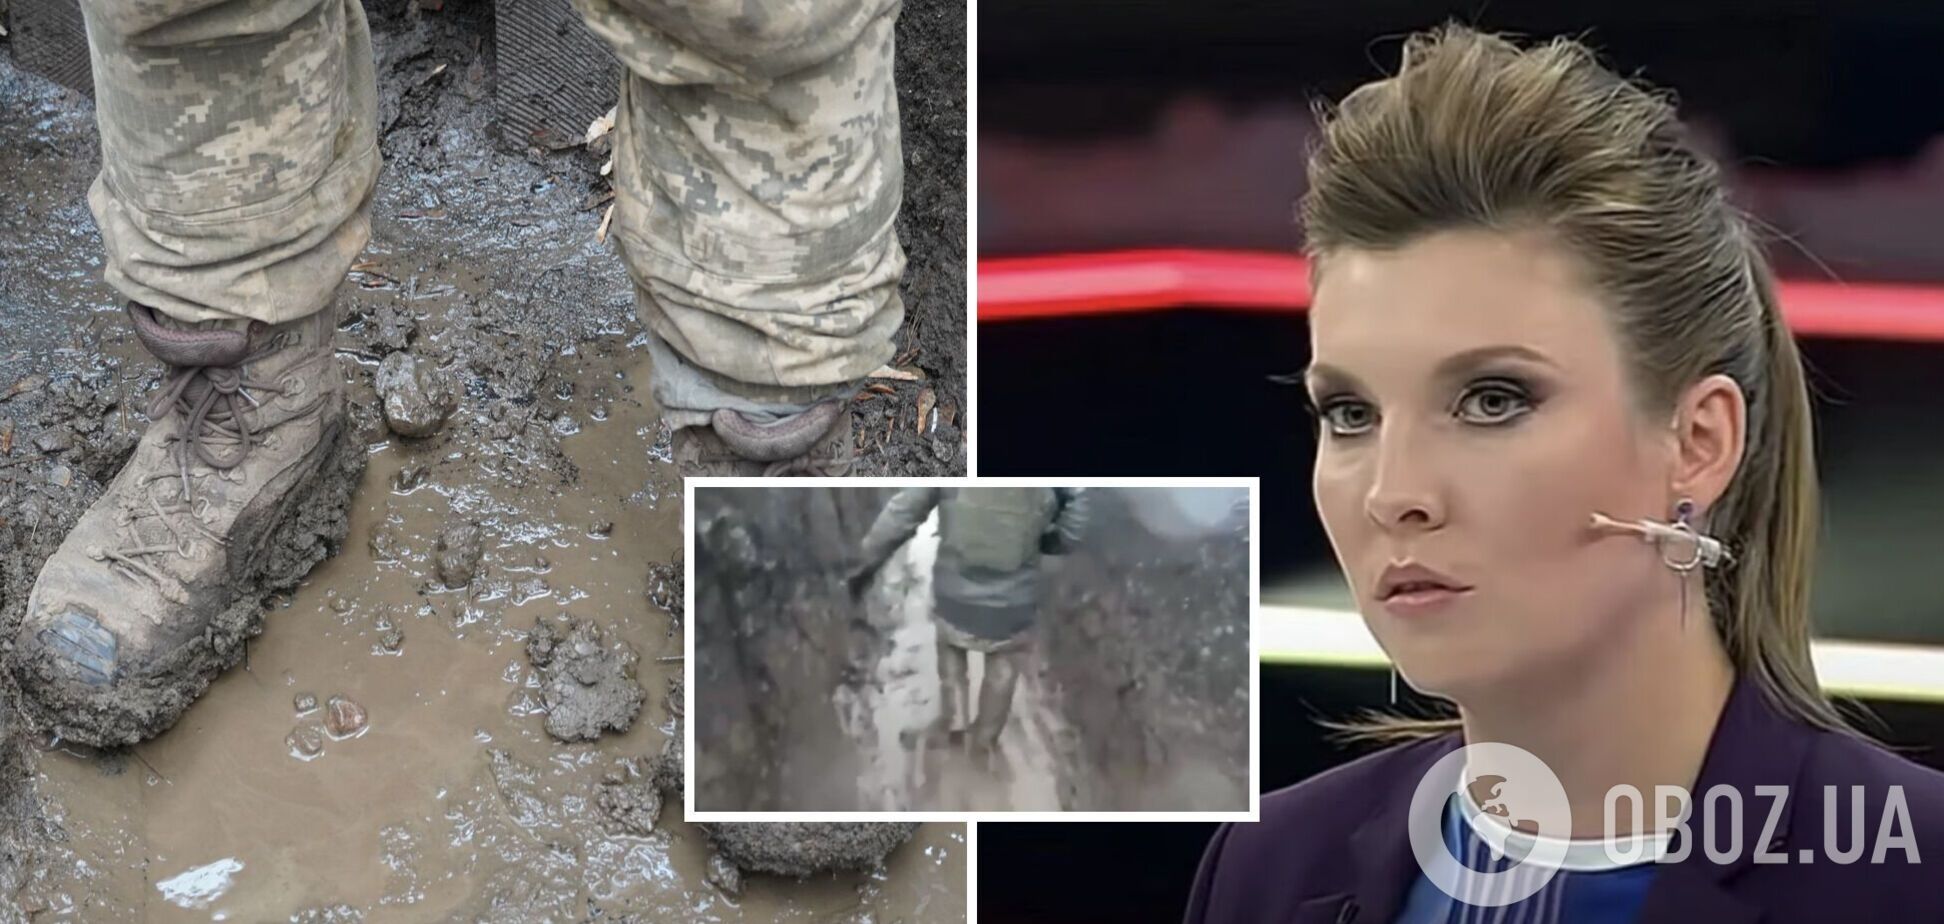 Скабєєва 'пустила сльозу' через болото в окопах солдатів ЗСУ: 'бо в Києві відмовляються від будь-яких мирних ініціатив'. Відео  